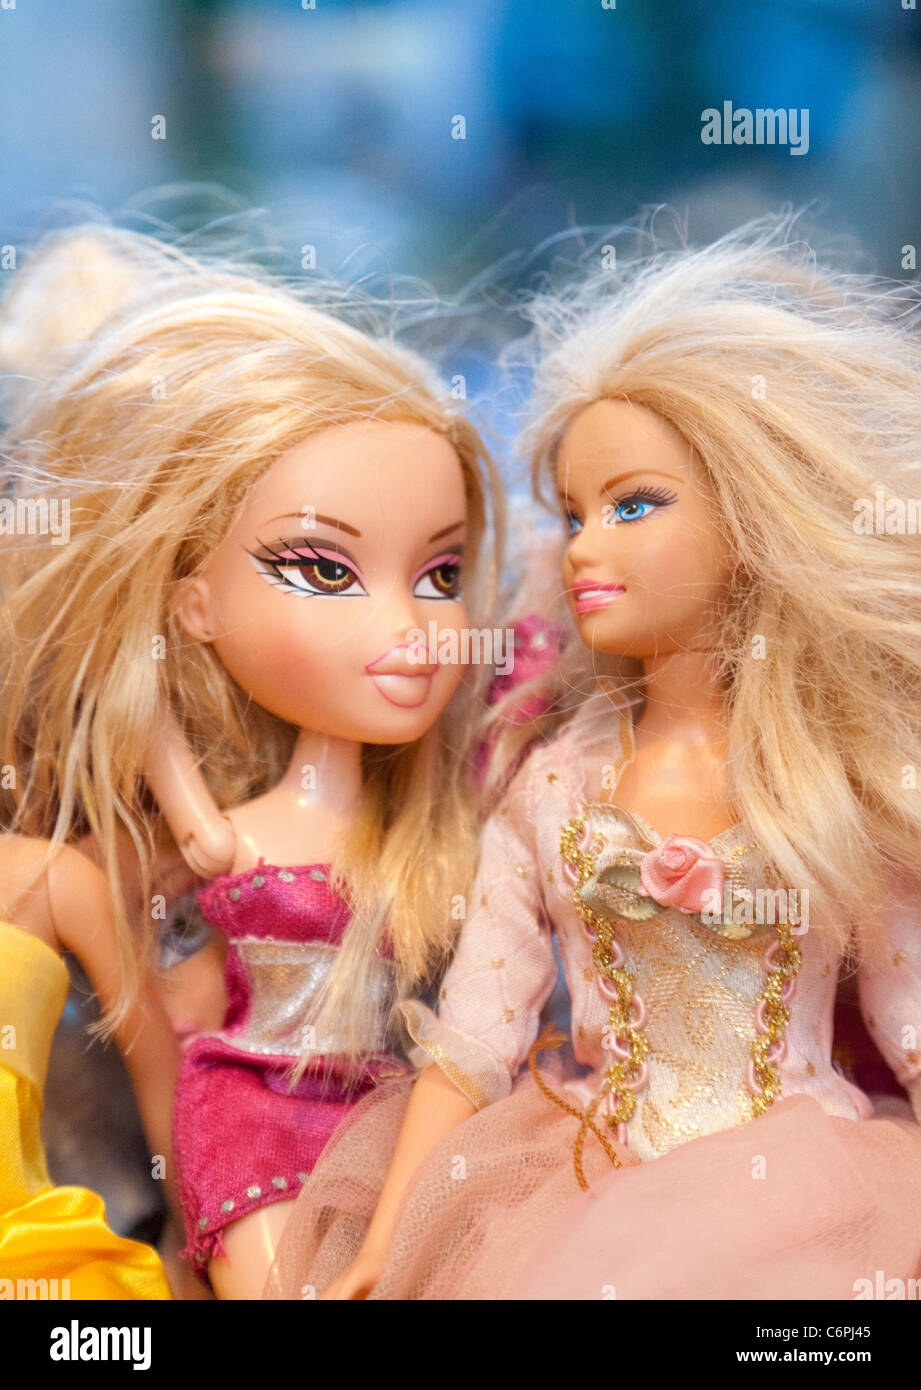 Barbie and Bratz dolls together Stock Photo - Alamy